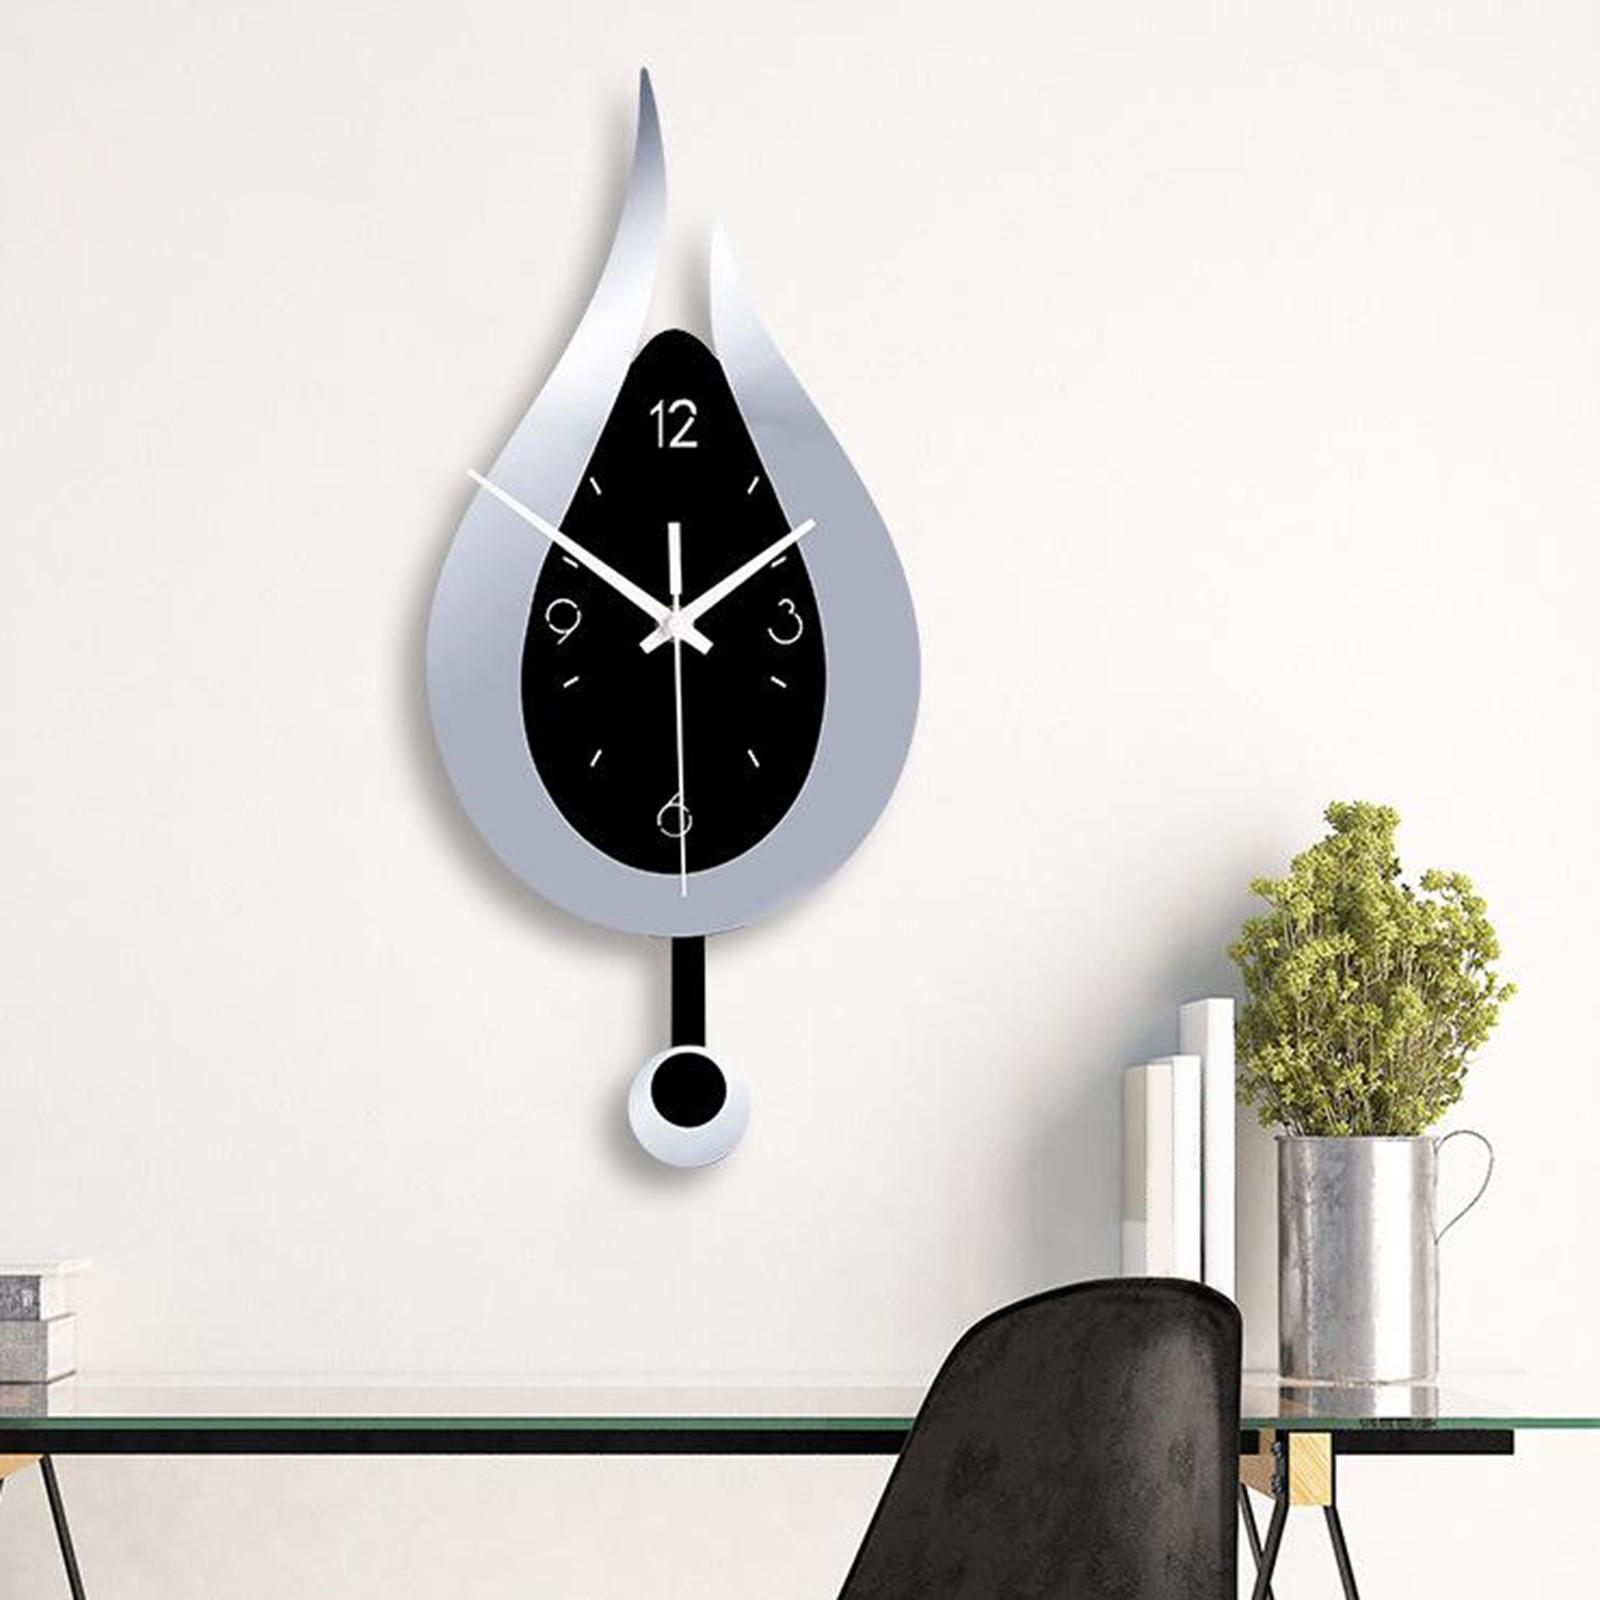 2 PCS Modern Pendulum Kitchen Wall Clocks Battery Operated Decorative Clocks